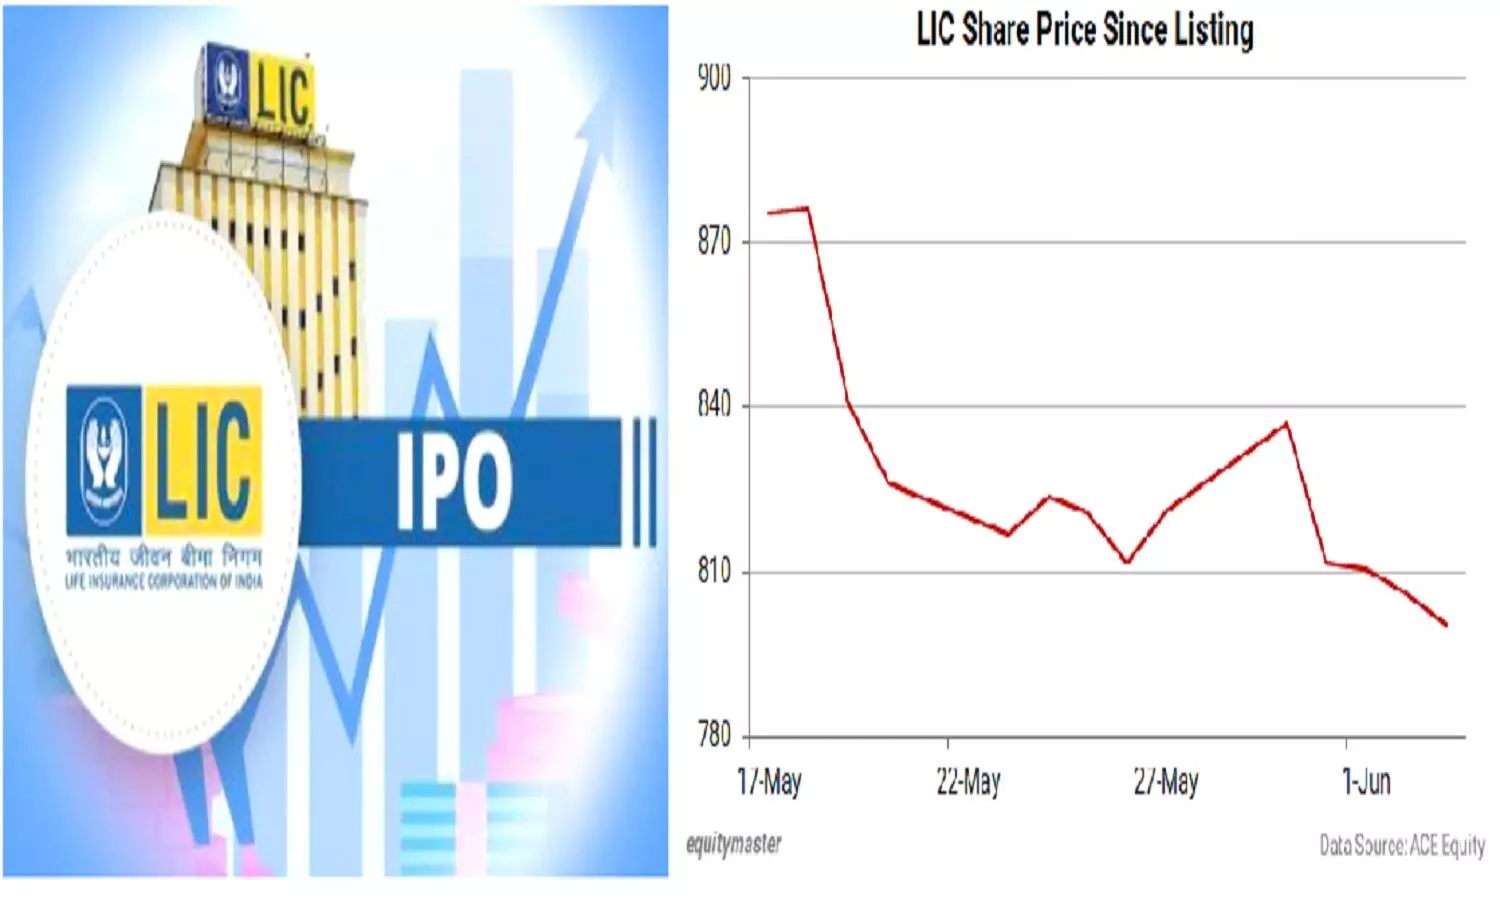 Why LIC Share Falling: एलआईसी के शेयर क्यों गिर रहे हैं? 700 रुपए के नीचे जाने की आशंका